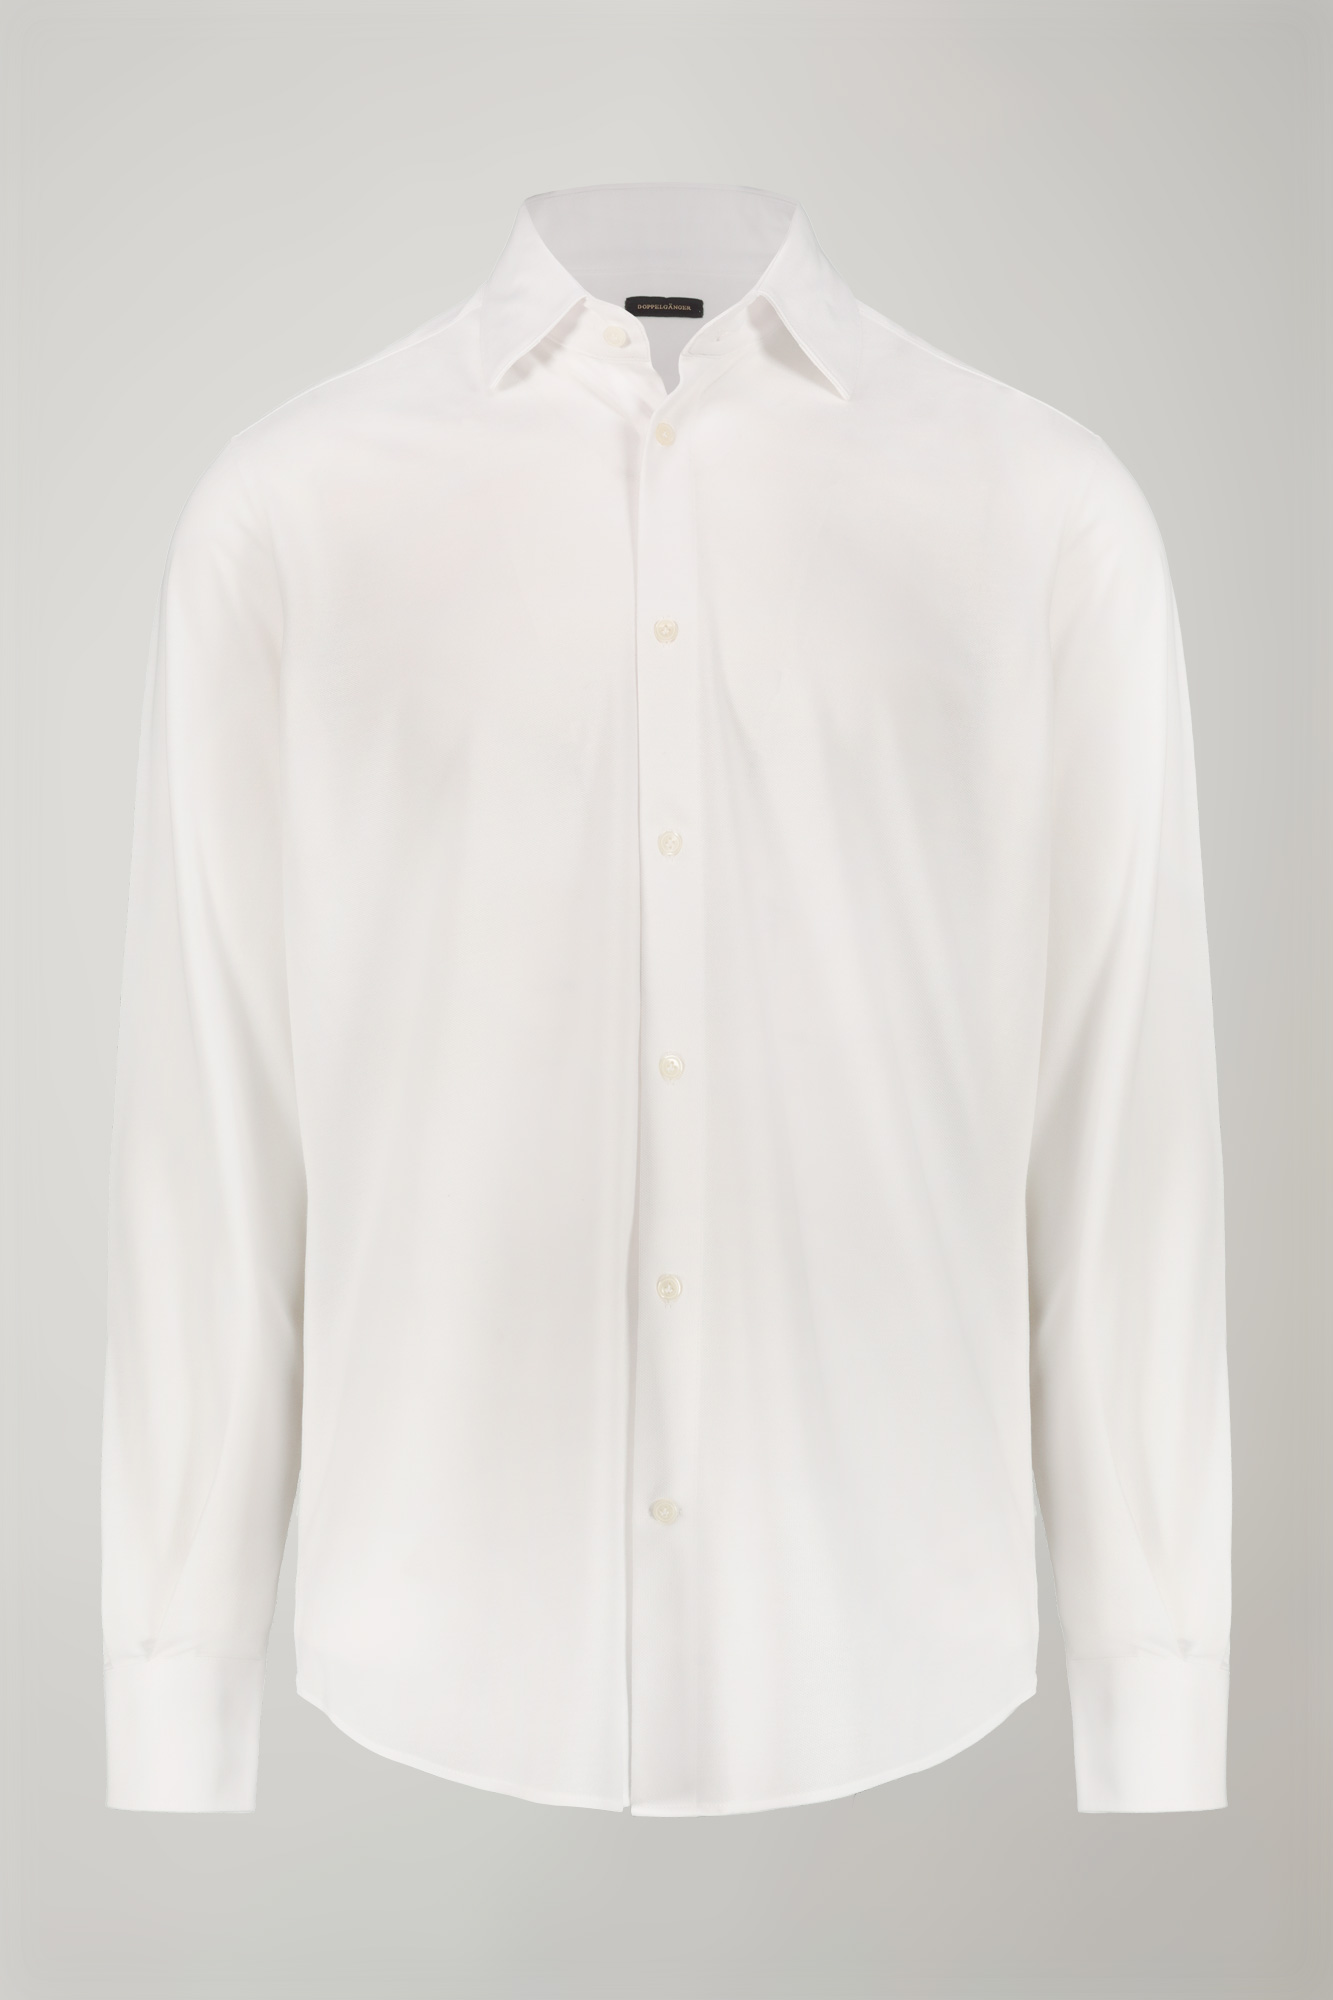 Polo camicia uomo manica lunga con collo classico e tessuto jersey regular fit image number null